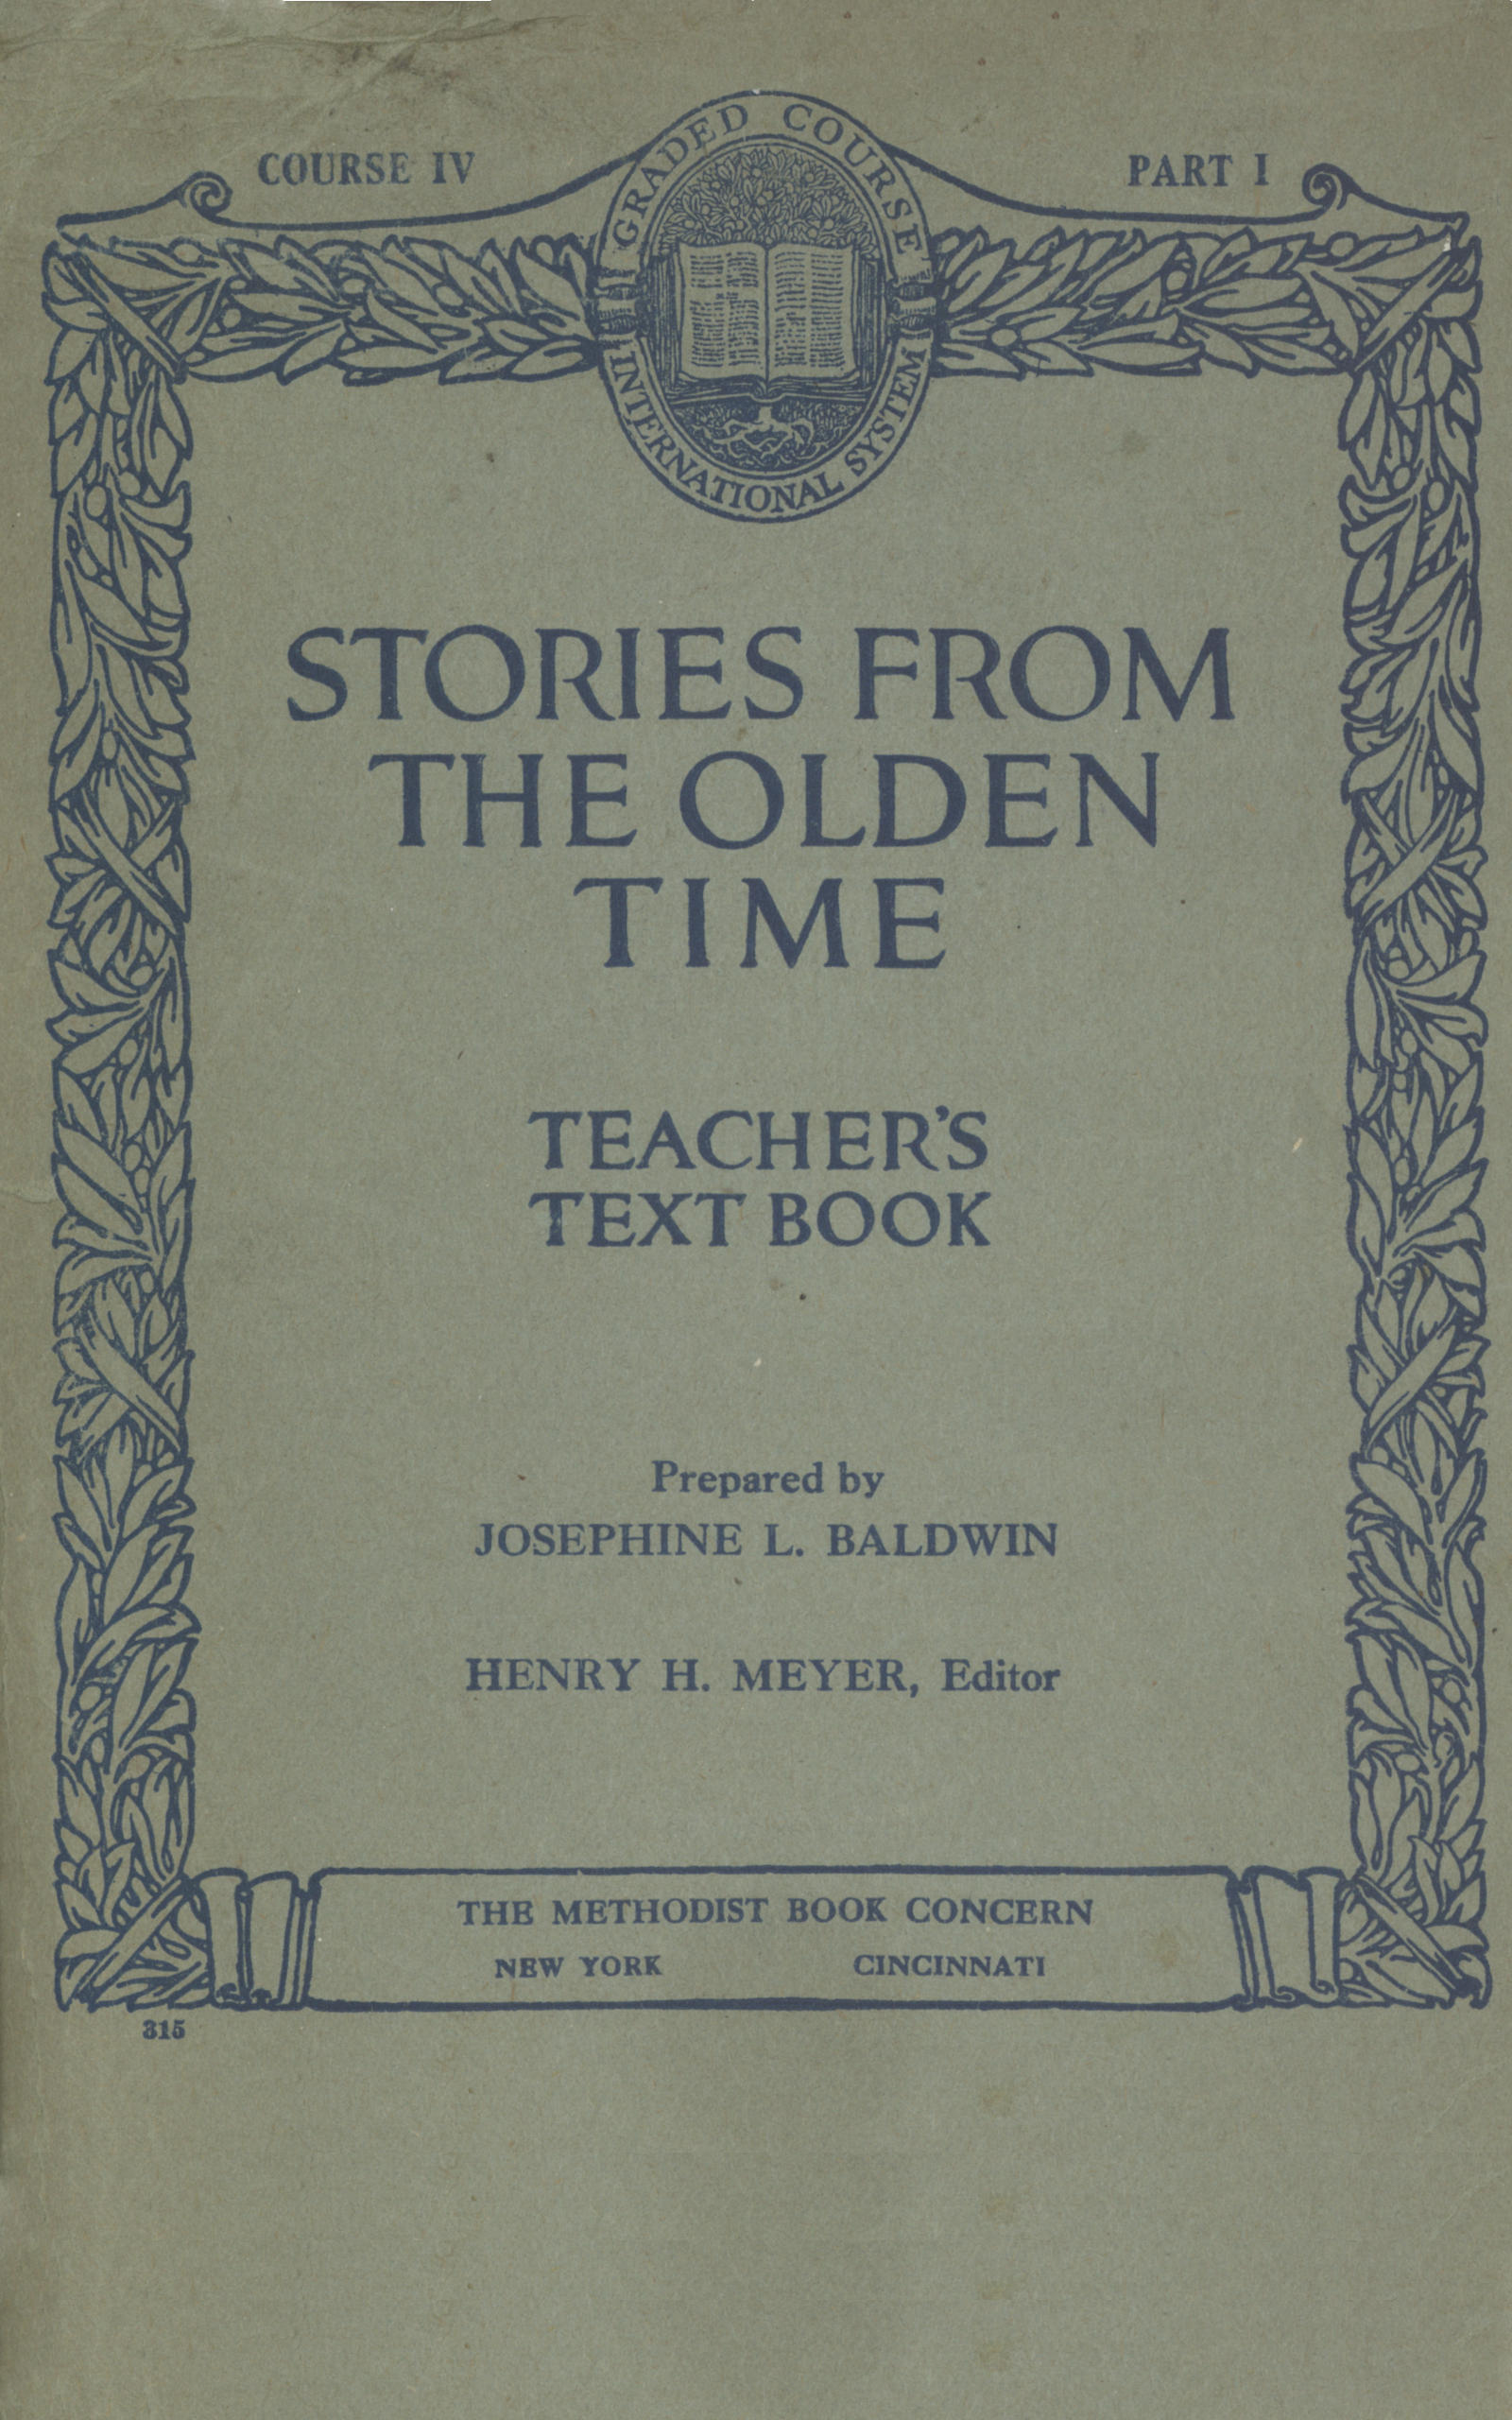 Eski Zaman Hikayeleri: Öğretmenler İçin Ders Kitabı, Ders IV, Bölüm I